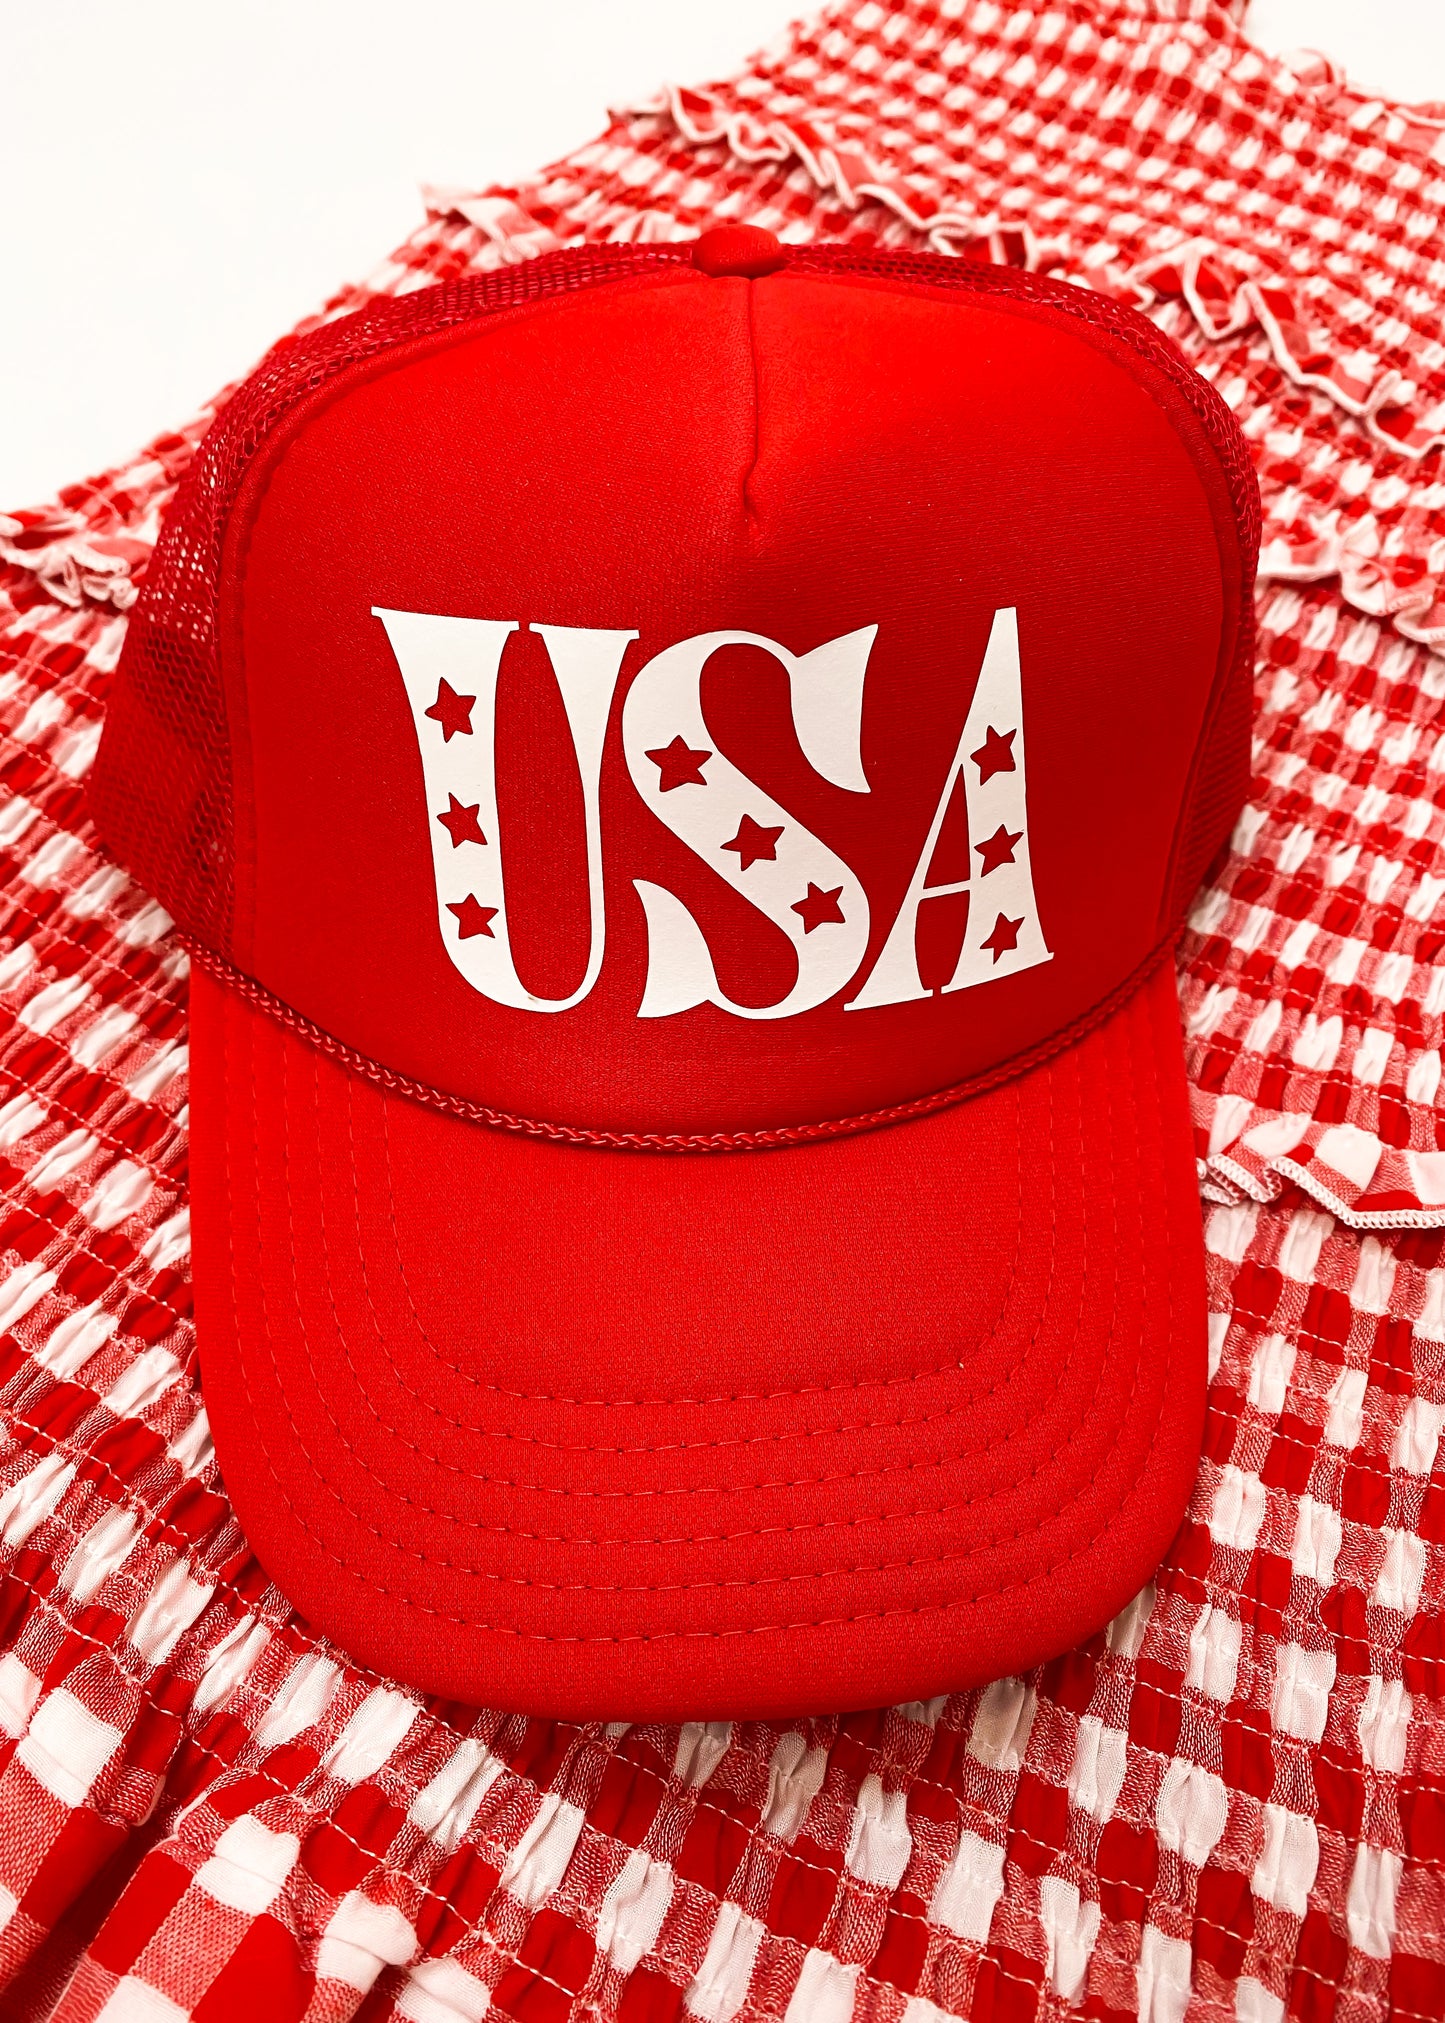 USA Red Trucker Hat